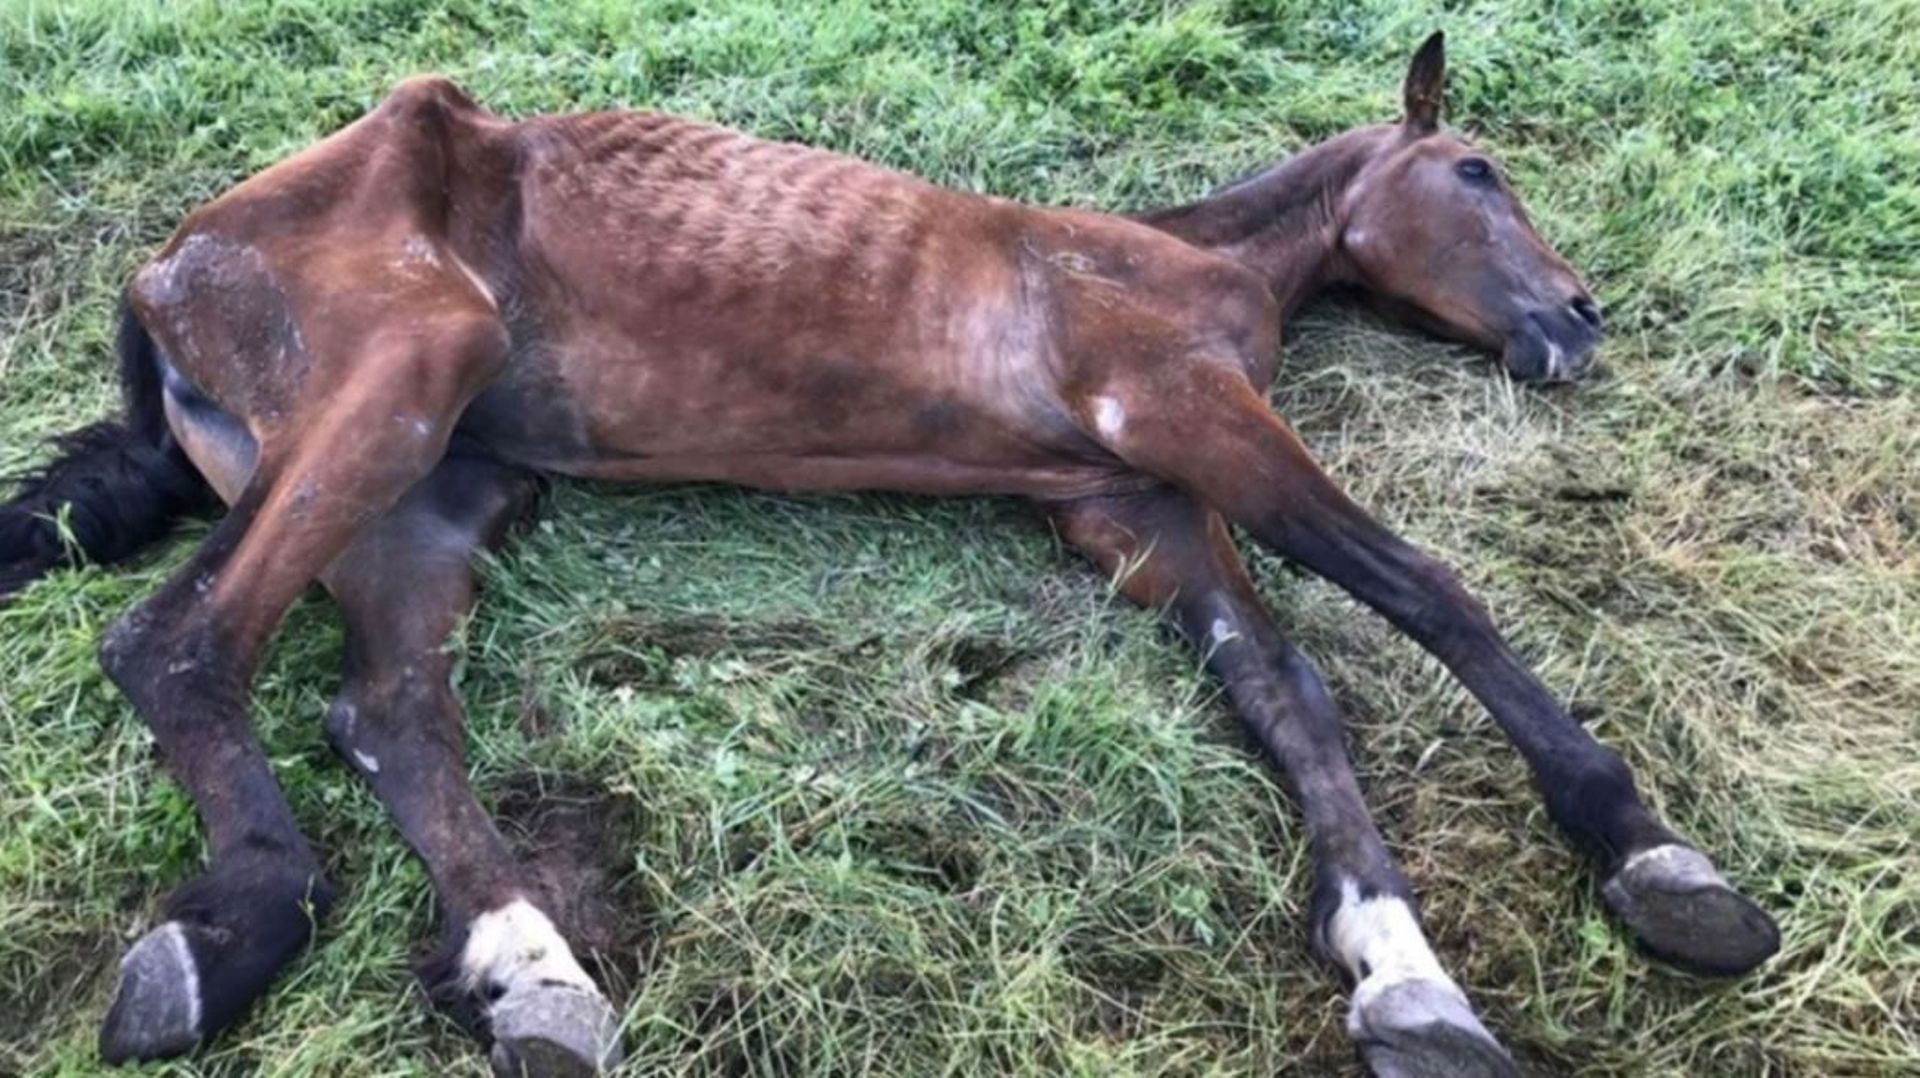 L'association "Animaux en péril" avait pris des photos des animaux saisis. Ici, un cheval trouvé lors de la saisie du 24 juillet 2019 à Ogy.